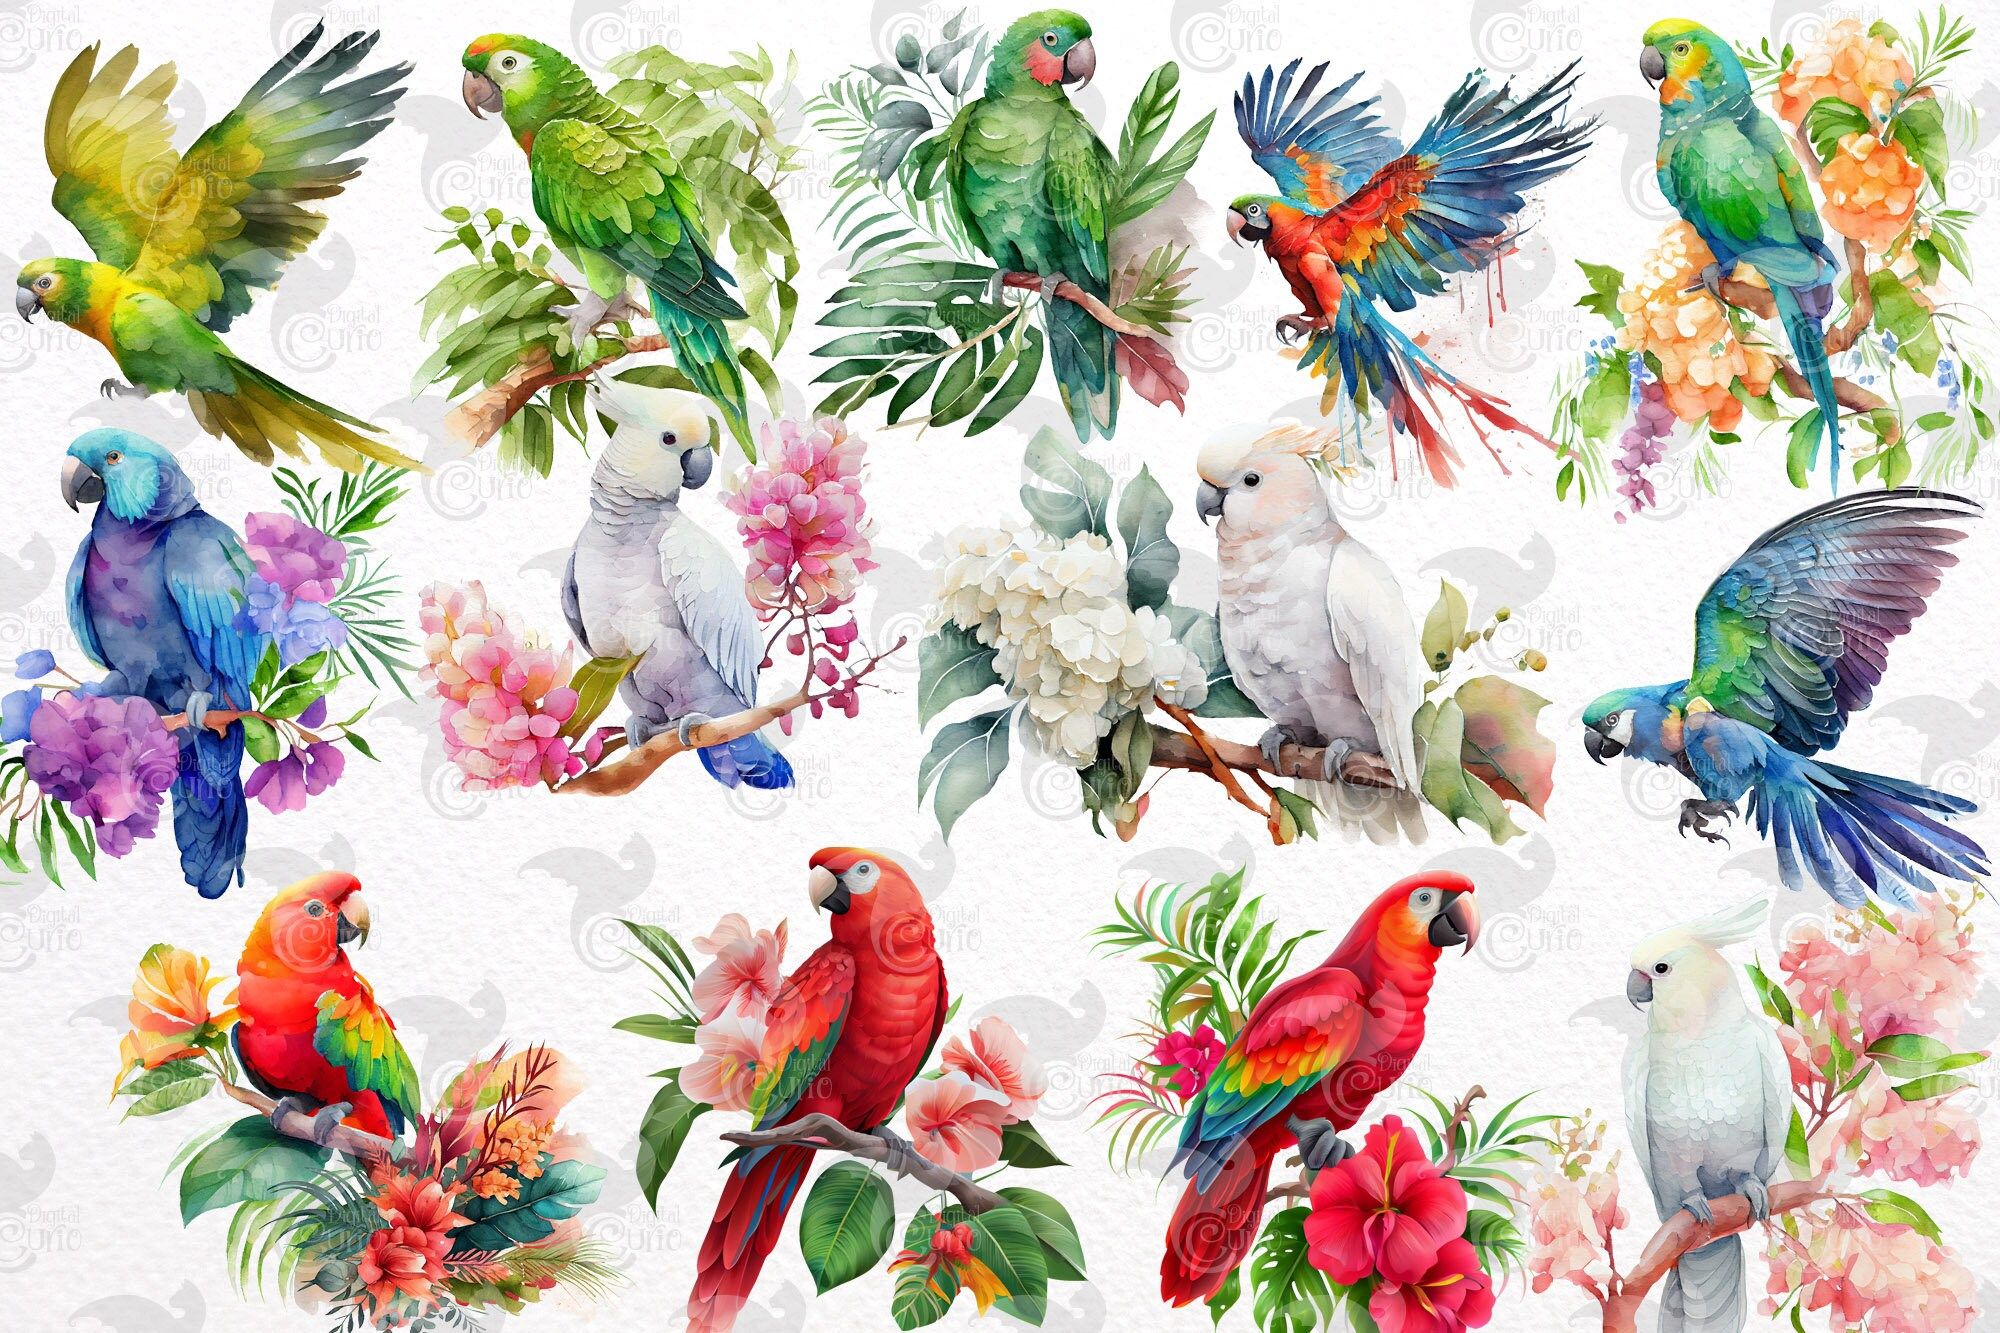  Papagei Hintergrundbild 2000x1333. Aquarell Papagei Clipart Tropische Vögel Mit Blumen Und Blättern Im PNG Format Zum Sofortigen Download Für Kommerzielle Nutzung